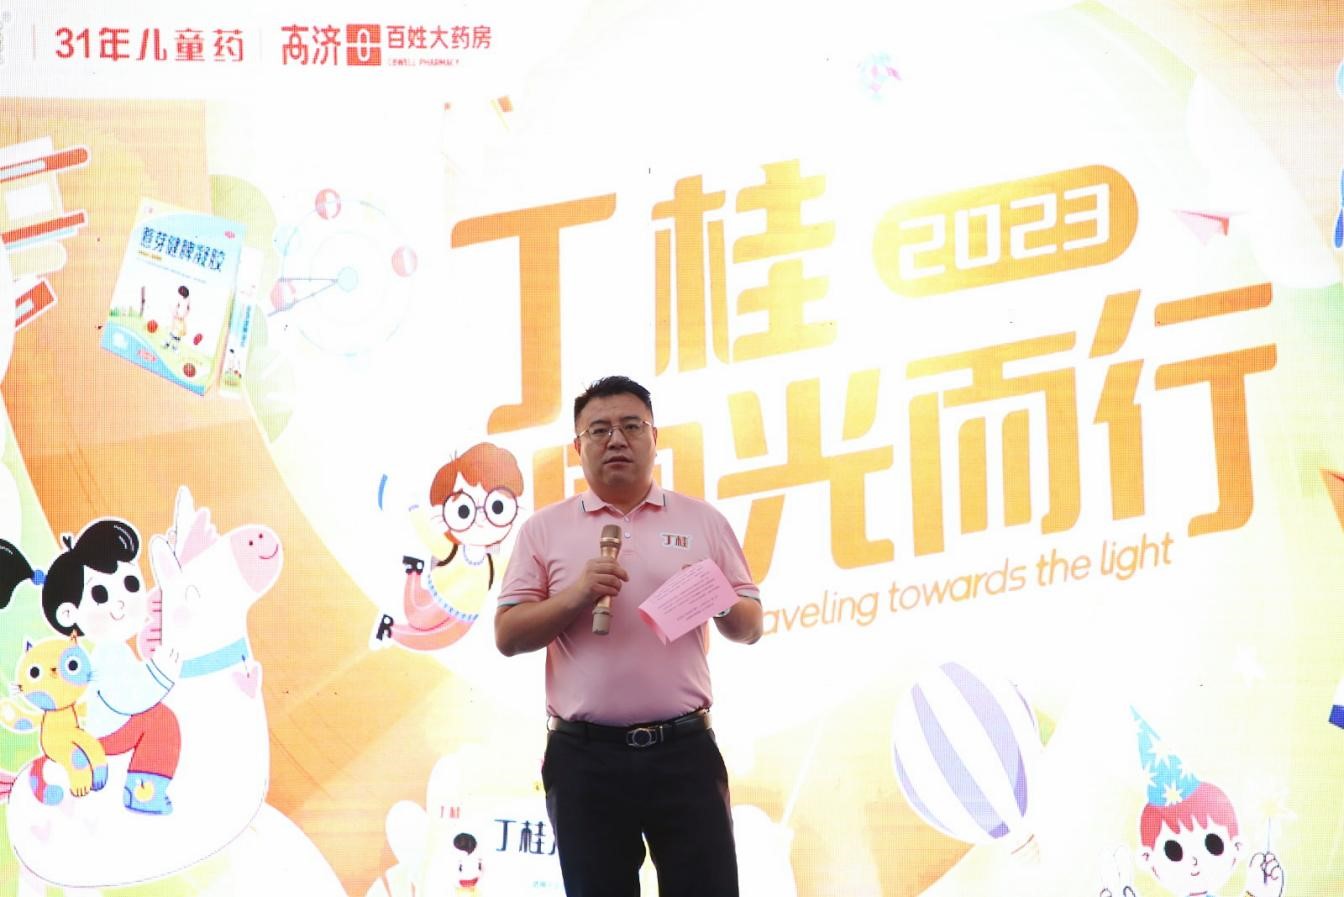 丁桂品牌携手珠江频道共举“向光而行”儿童公益活动，关爱儿童健康成长